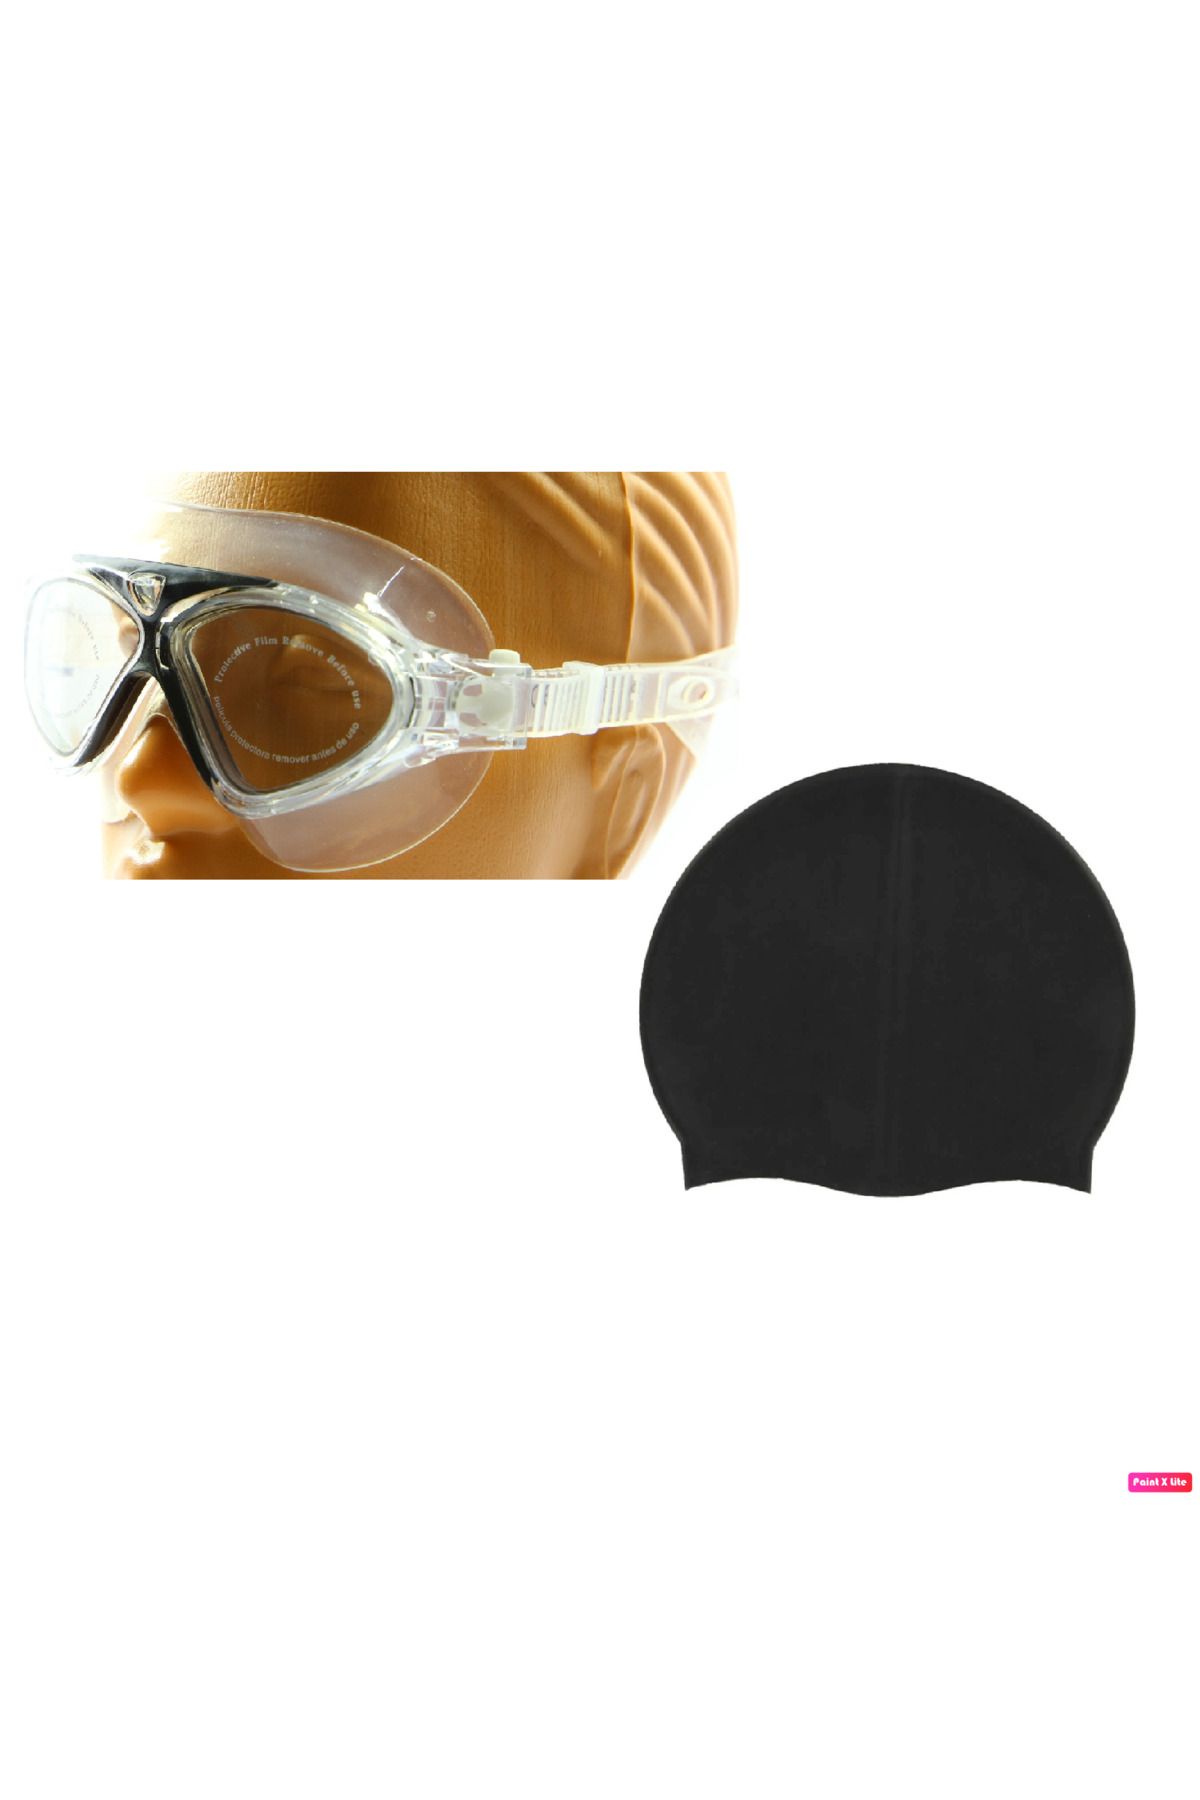 Avessa Povit 8170 Unisex Yetişkin Yüzücü Deniz Gözlüğü Buğu Yapmaz Havuz Gözlüğü Siyah + Silikon Bone